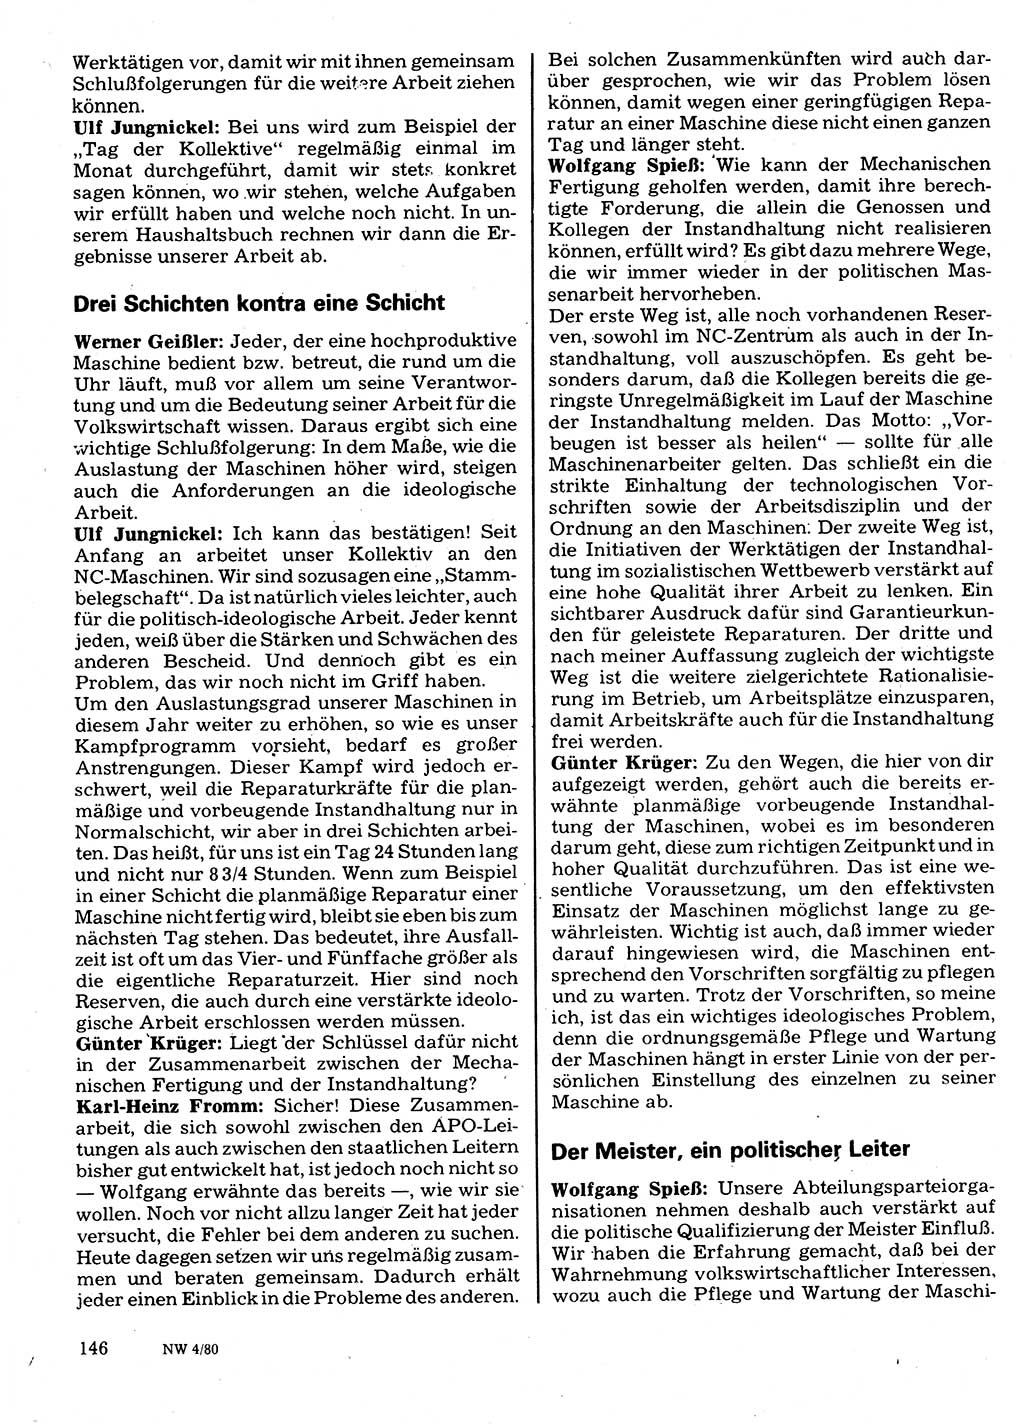 Neuer Weg (NW), Organ des Zentralkomitees (ZK) der SED (Sozialistische Einheitspartei Deutschlands) fÃ¼r Fragen des Parteilebens, 35. Jahrgang [Deutsche Demokratische Republik (DDR)] 1980, Seite 146 (NW ZK SED DDR 1980, S. 146)